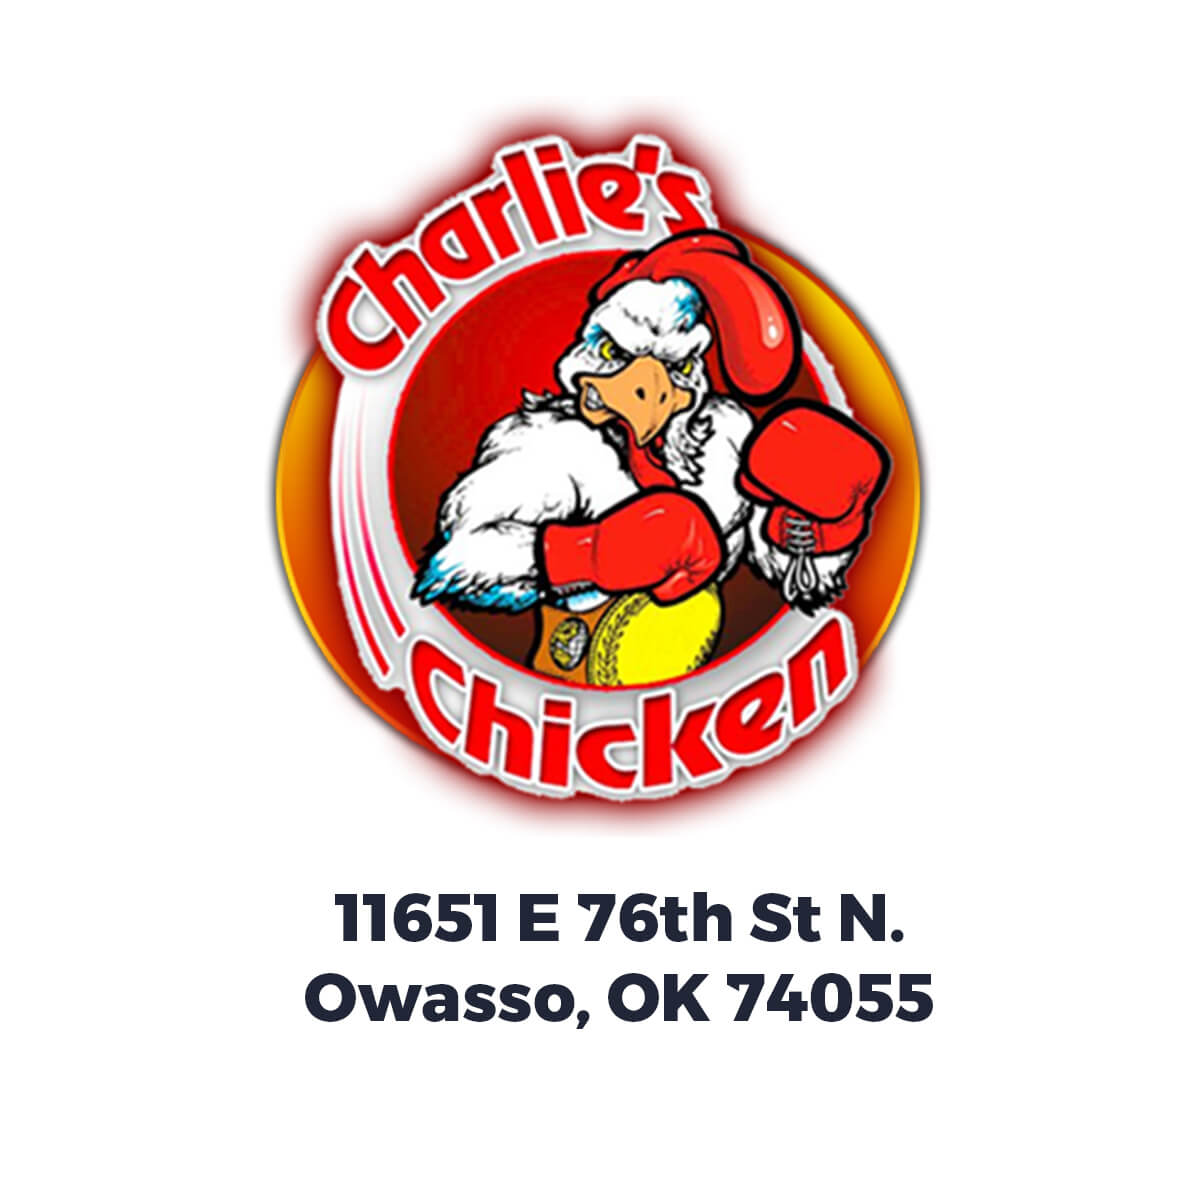 Charlie's Chicken 250